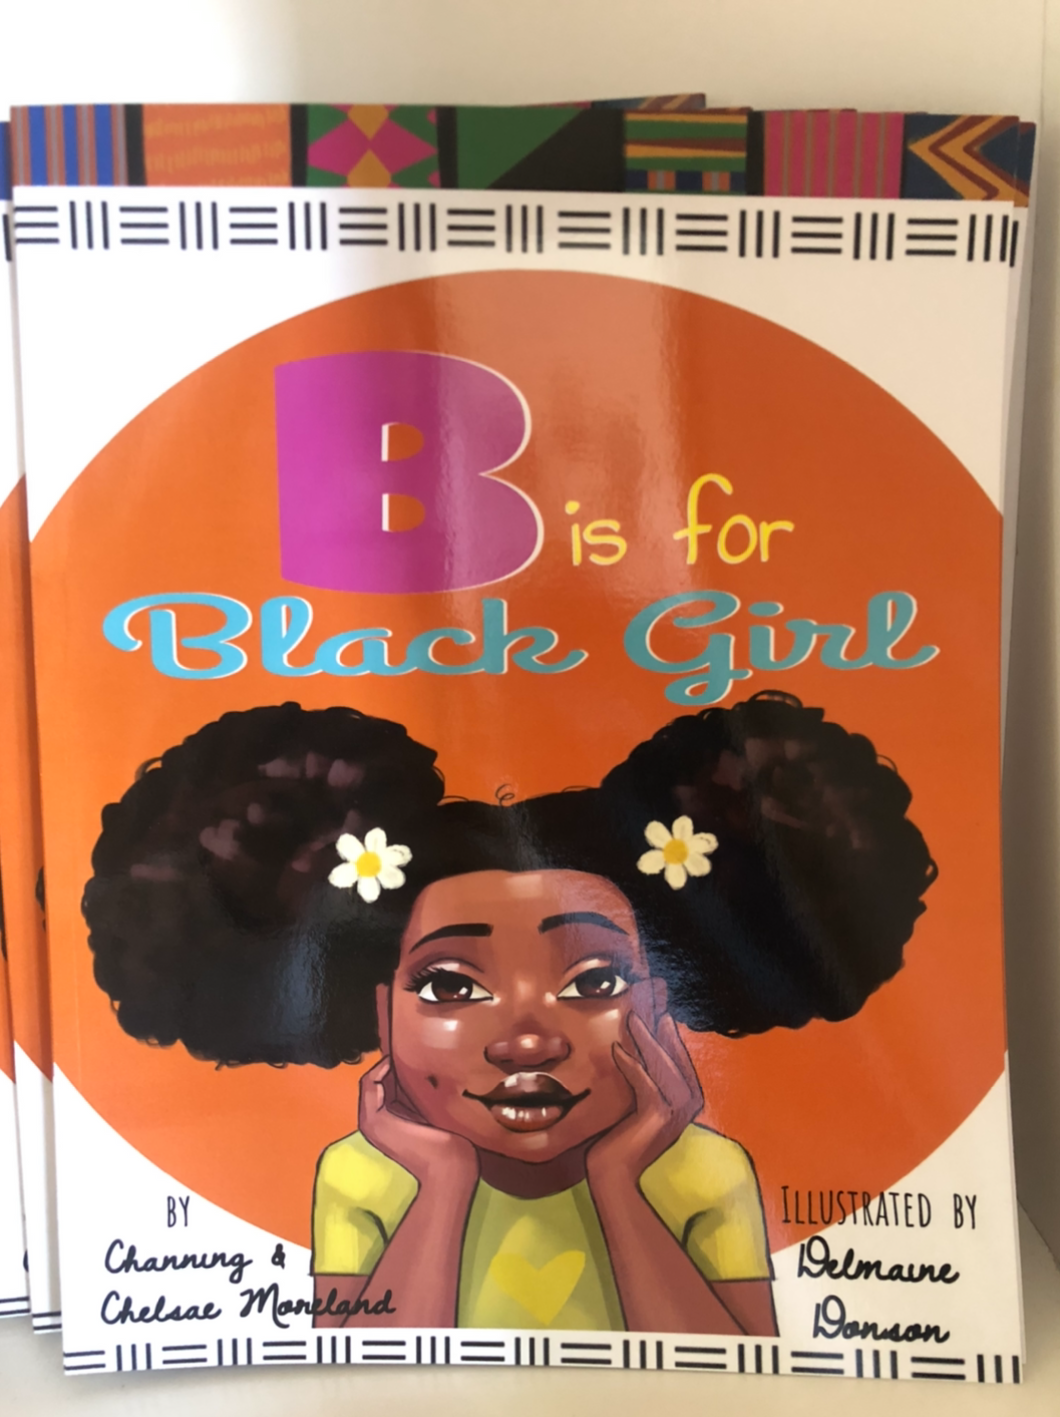 Channing & Chelsae Moreland - B is for Black Girl (Paperback)